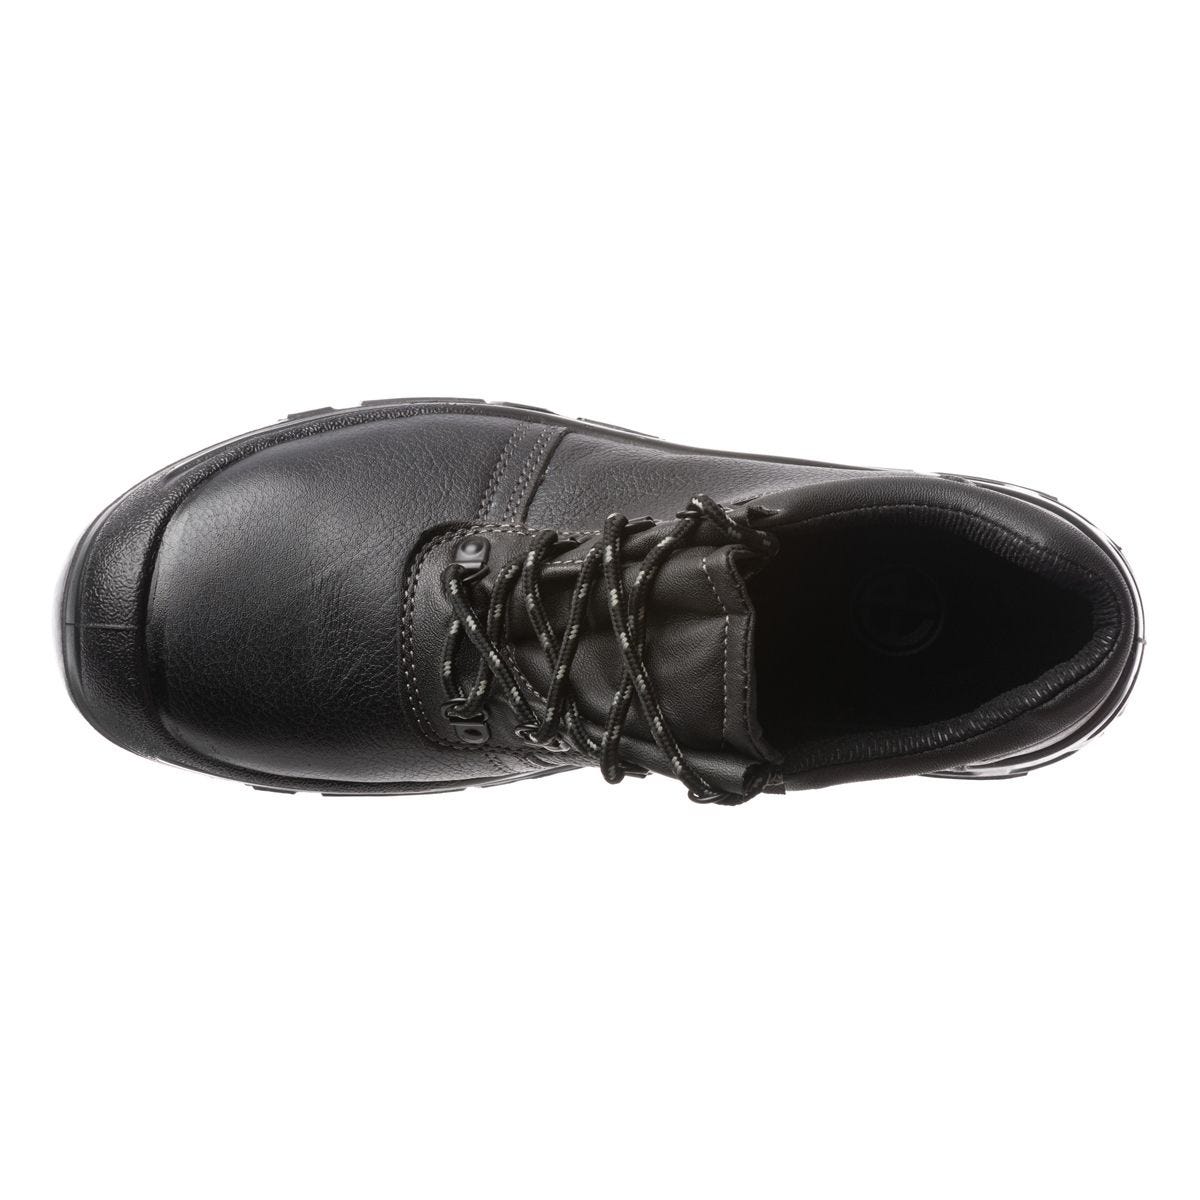 Chaussures de sécurité basses Azurite II S3 ESD noir - Coverguard - Taille 38 1